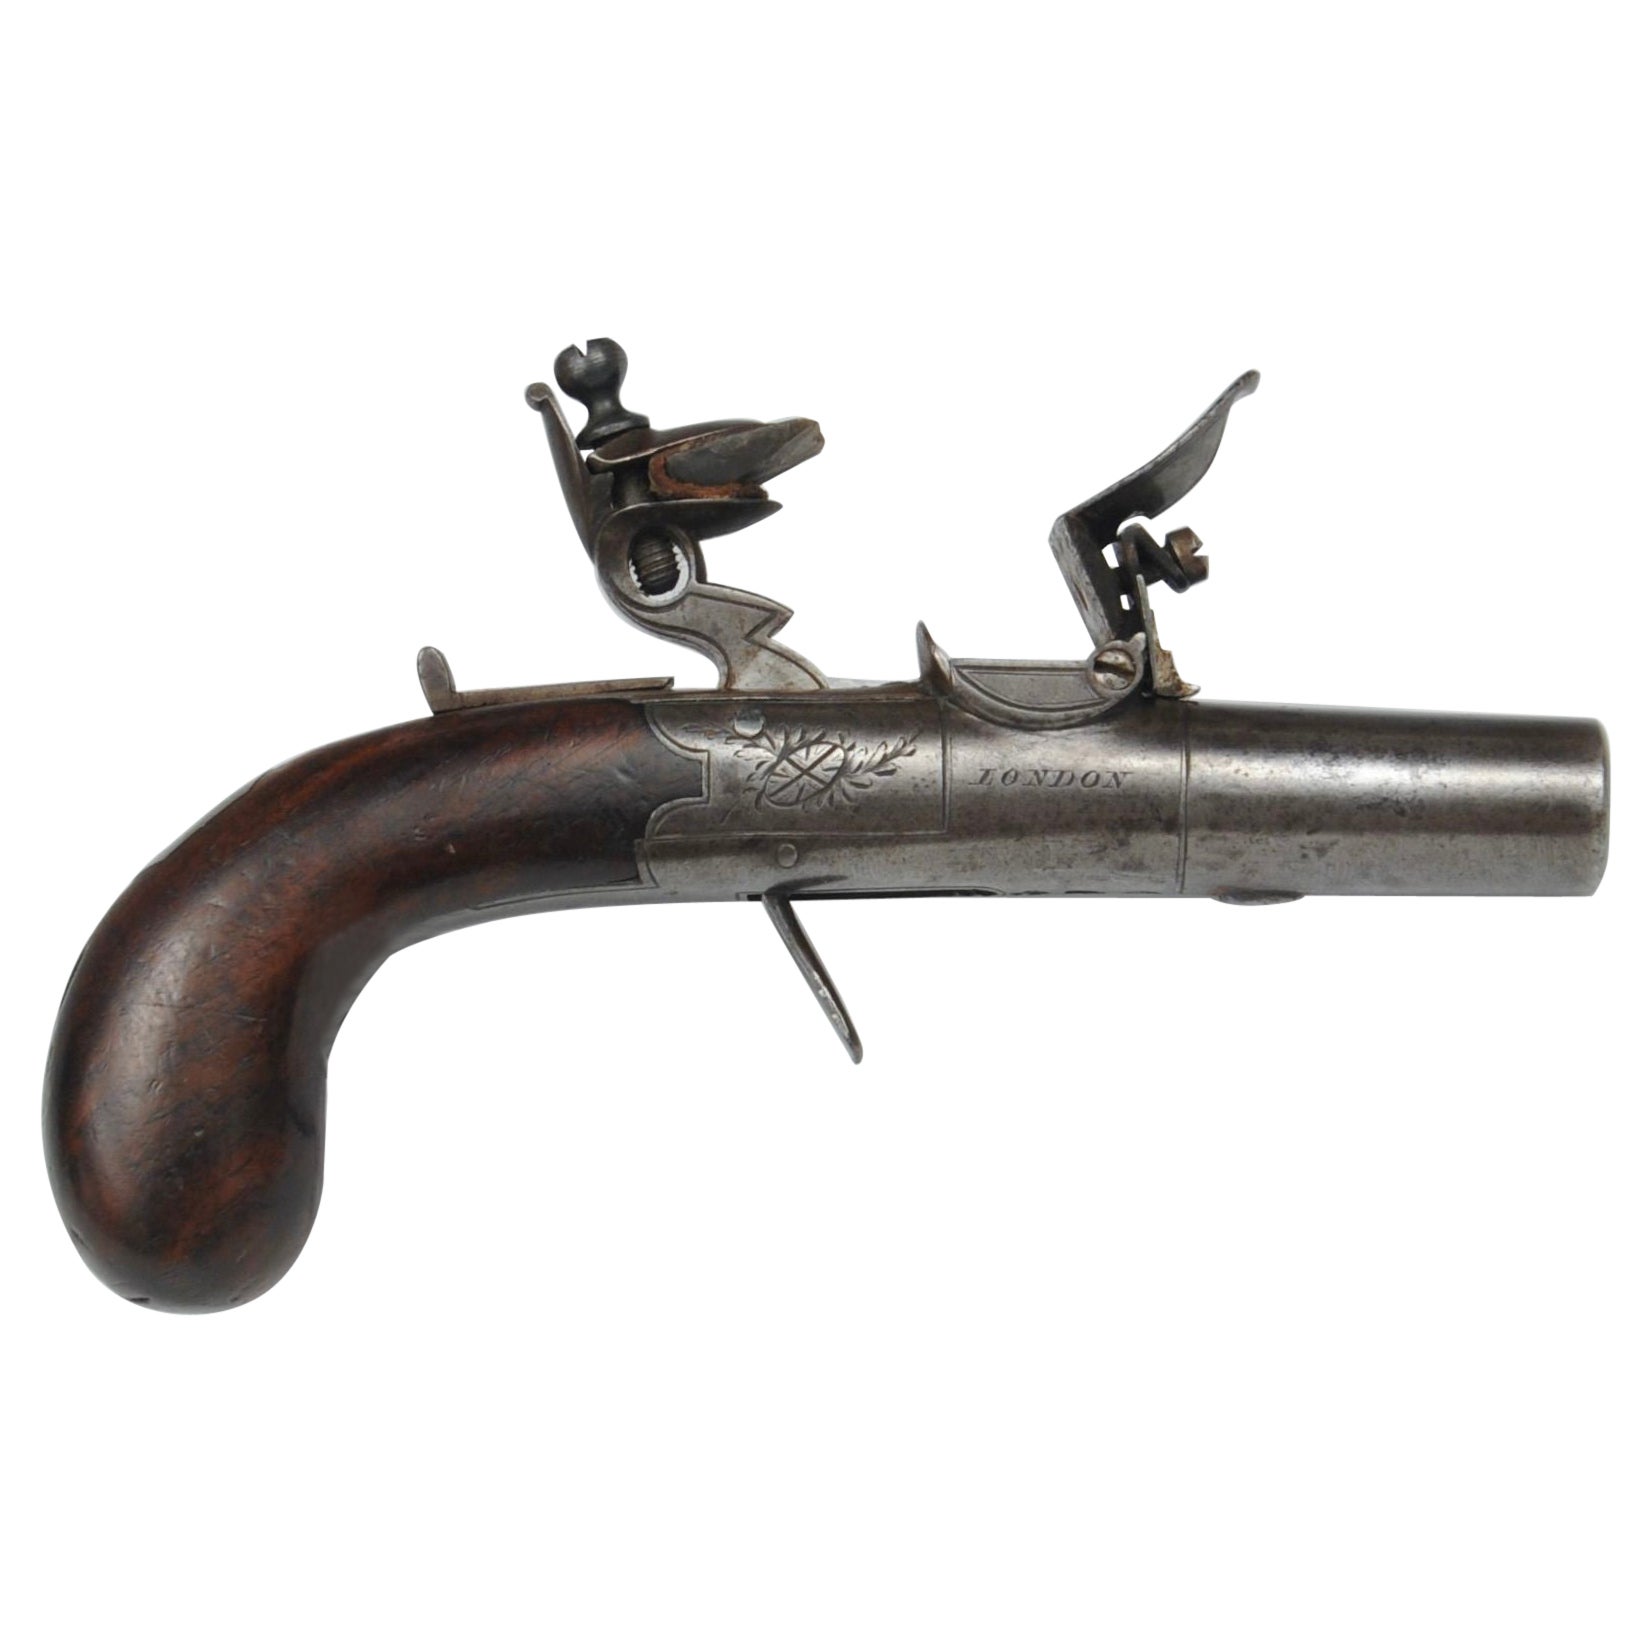 A Flintlock Box Lock Pocket Pistol